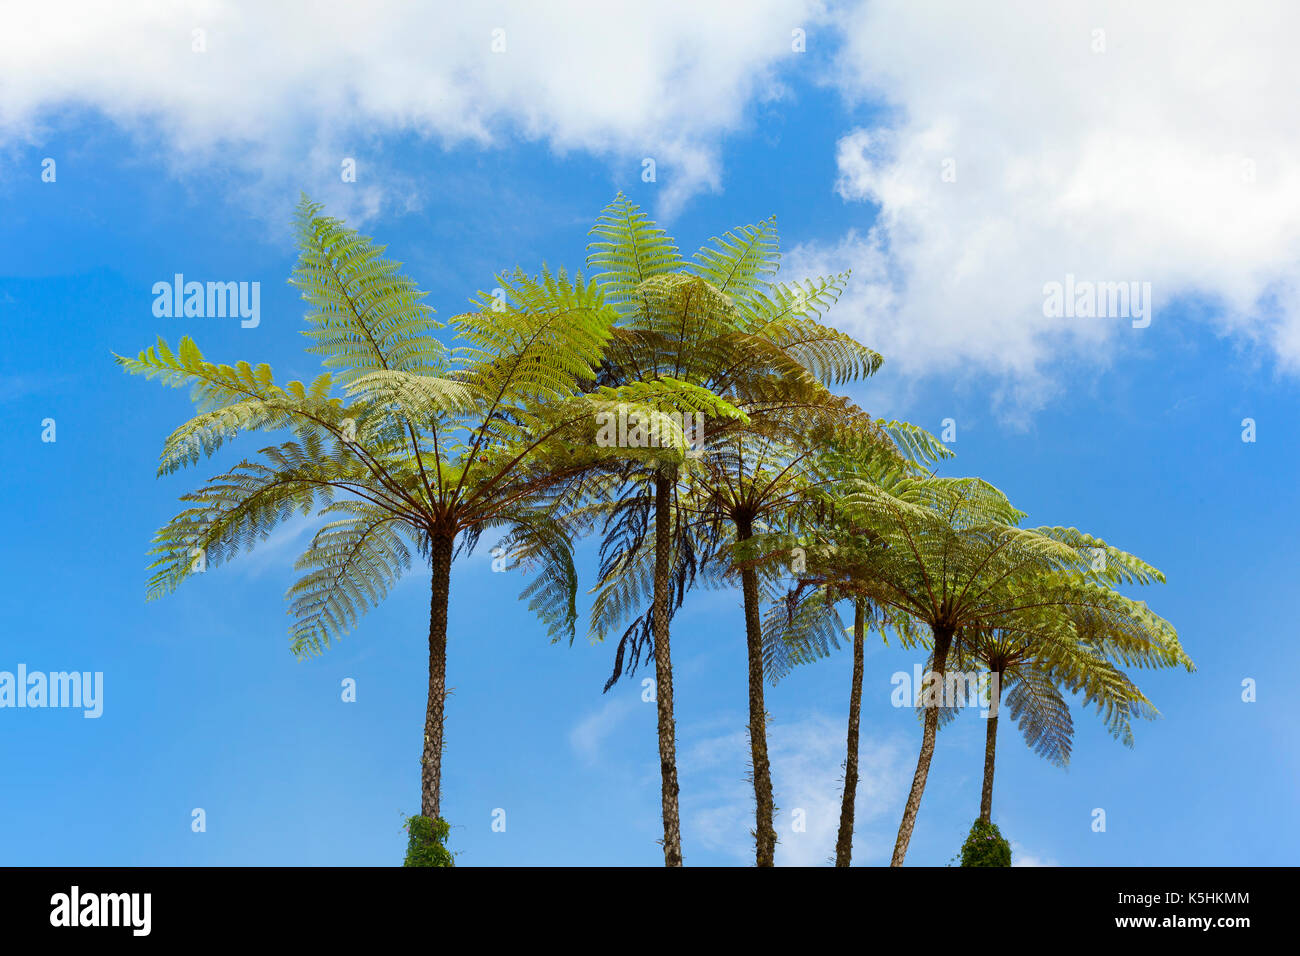 Felci arboree, Cameron Highlands, Malyasia, illuminata dal sole contro un cielo blu Foto Stock